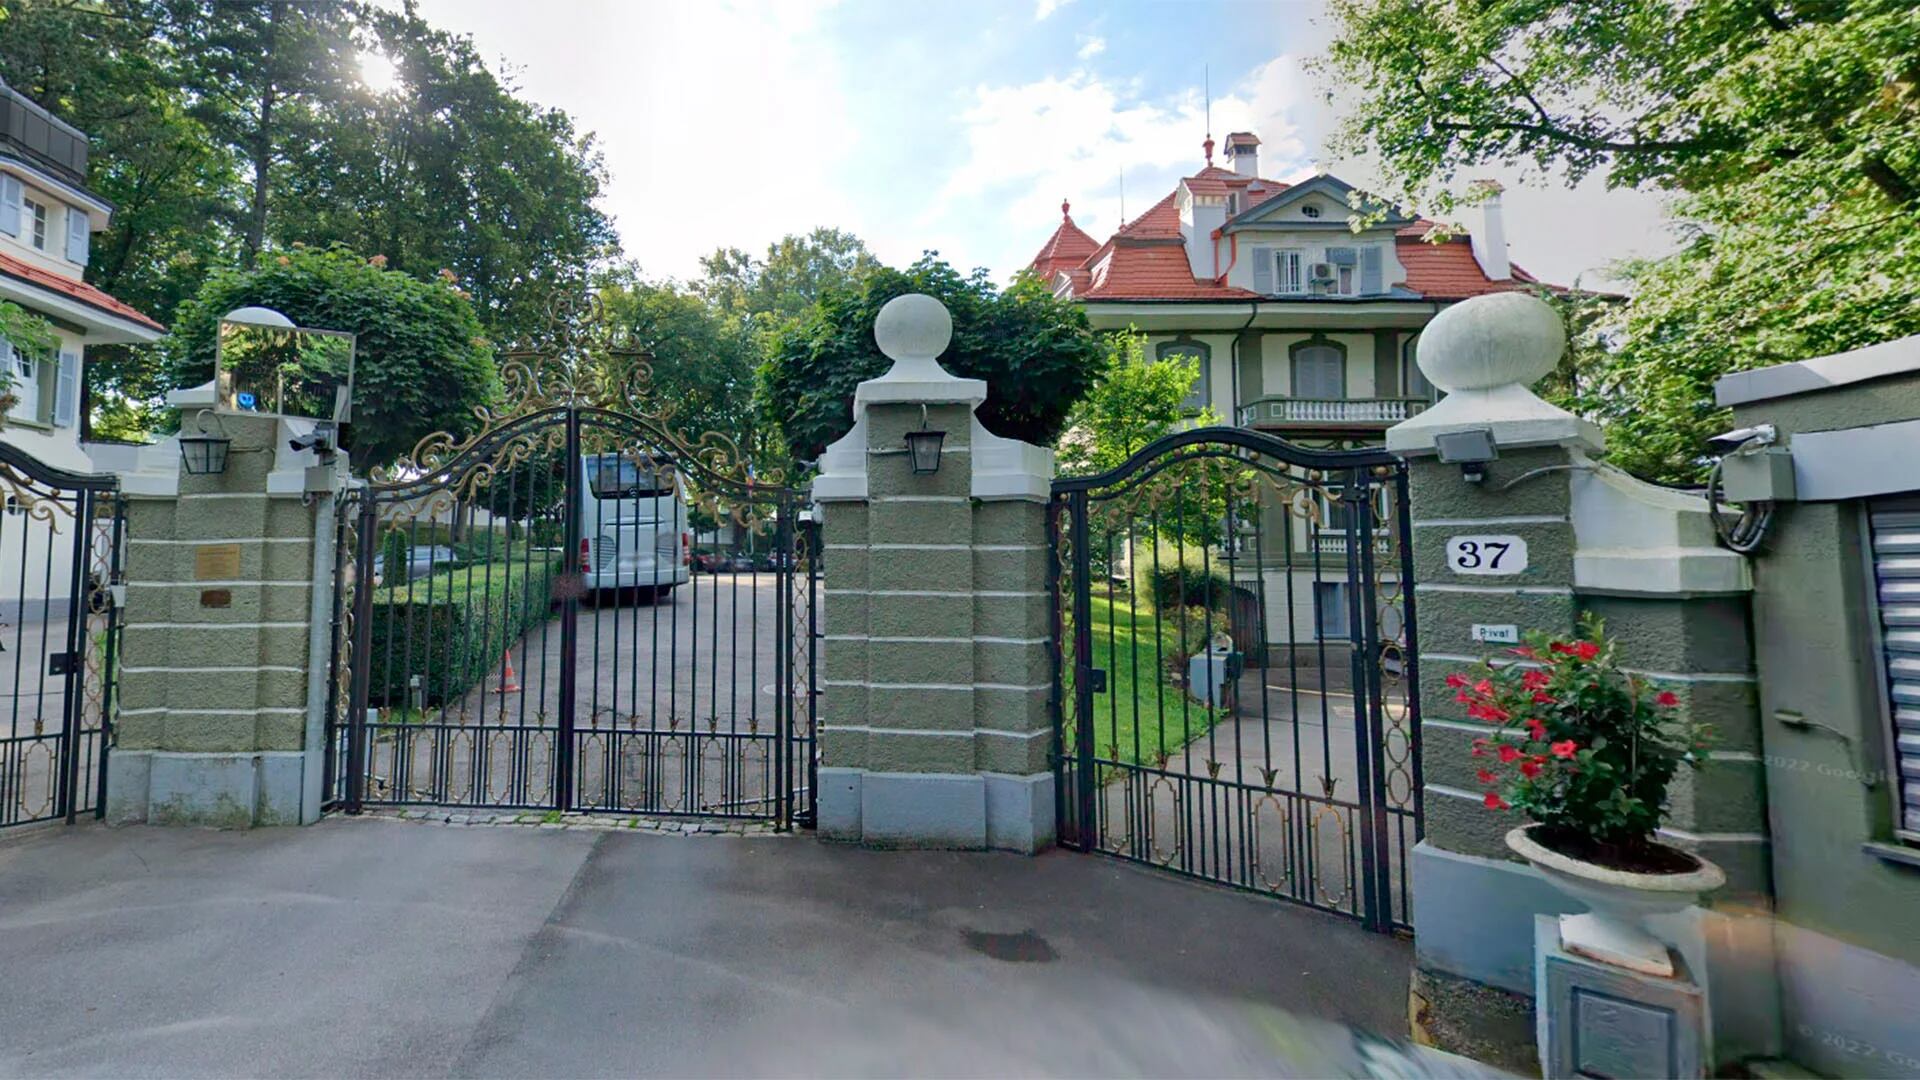 La embajada rusa en Berna: en lo que respecta a las actividades de la inteligencia rusa, la ciudad juega un papel secundario. El bastión del espionaje es Ginebra